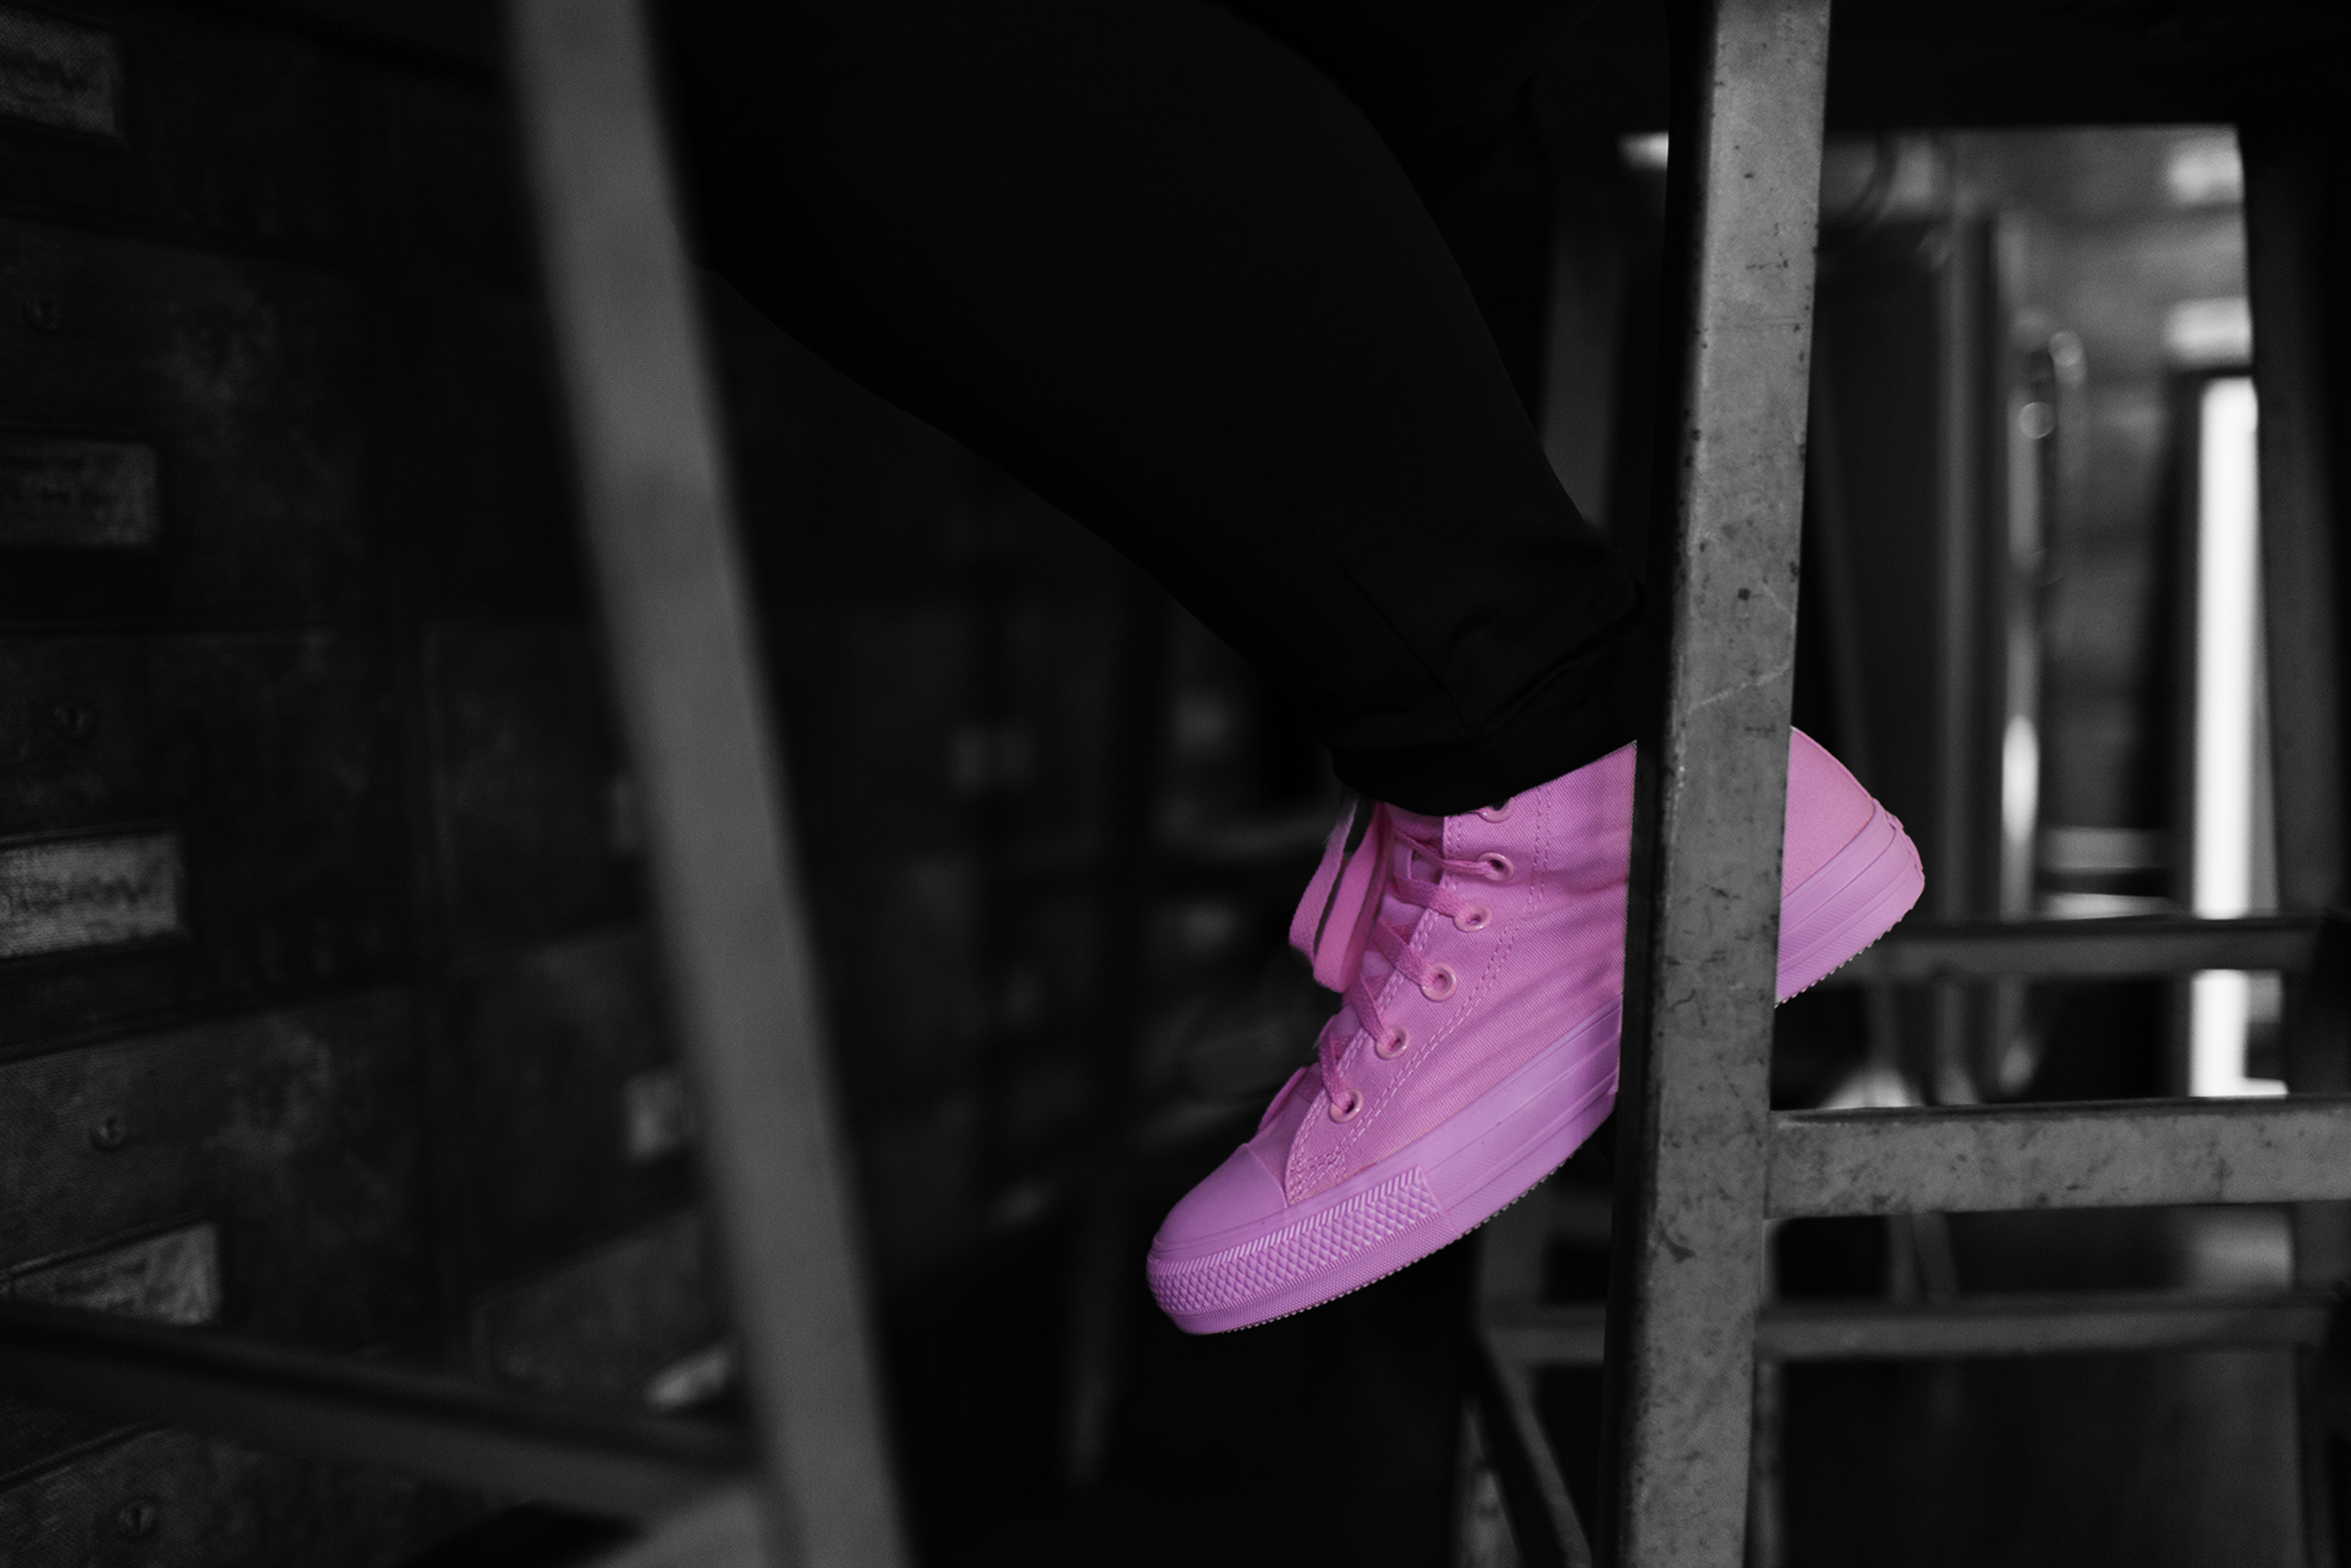 Série De Vídeos Da Converse Busca Conscientizar As Mulheres Sobre A  Prevenção Do Câncer De Mama | SneakersBR - Lifestyle Sneakerhead